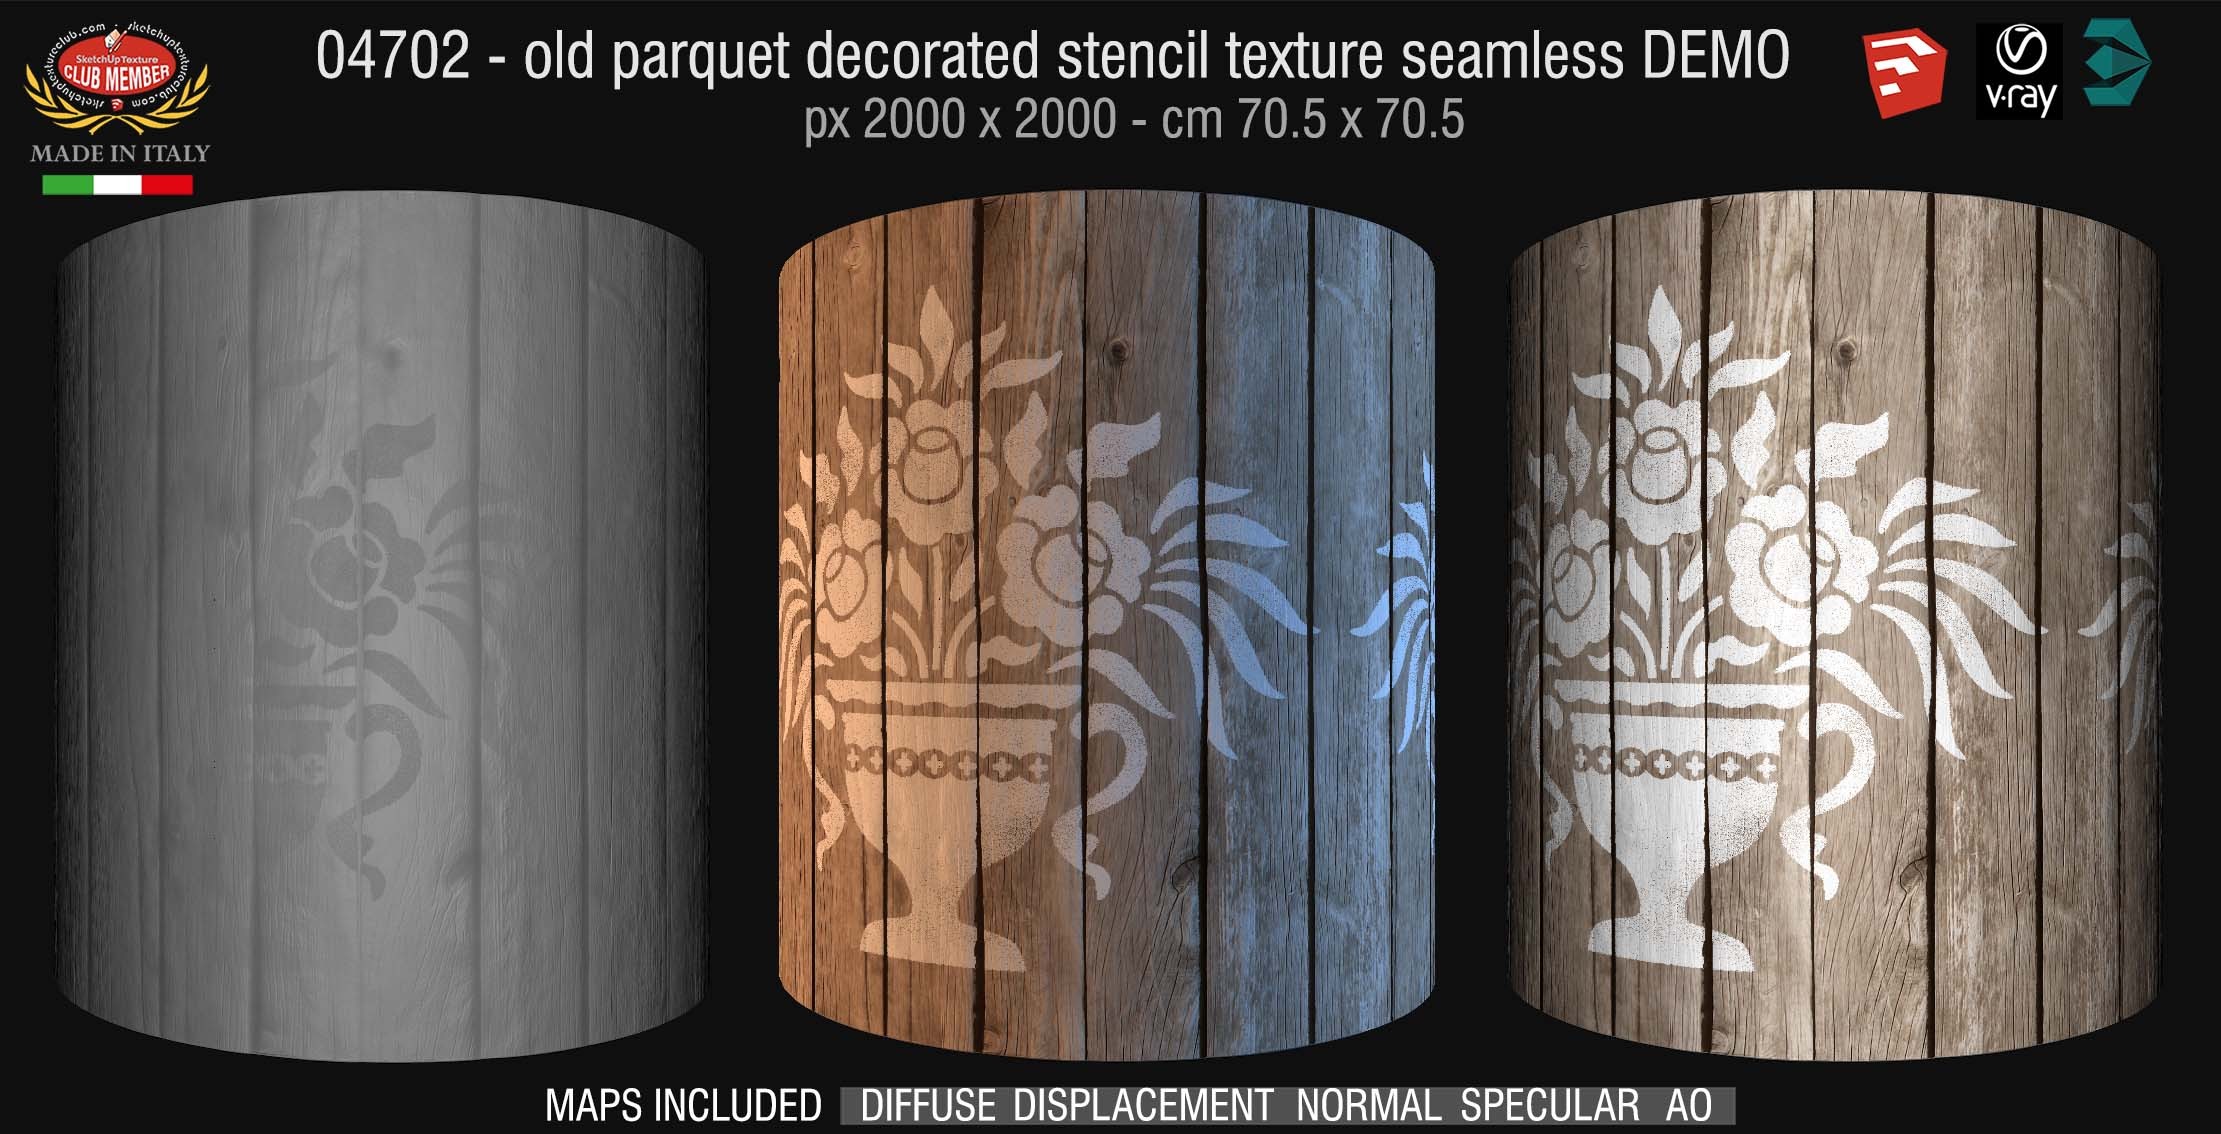 04702 HR Parquet decorated stencil texture seamless + maps DEMO